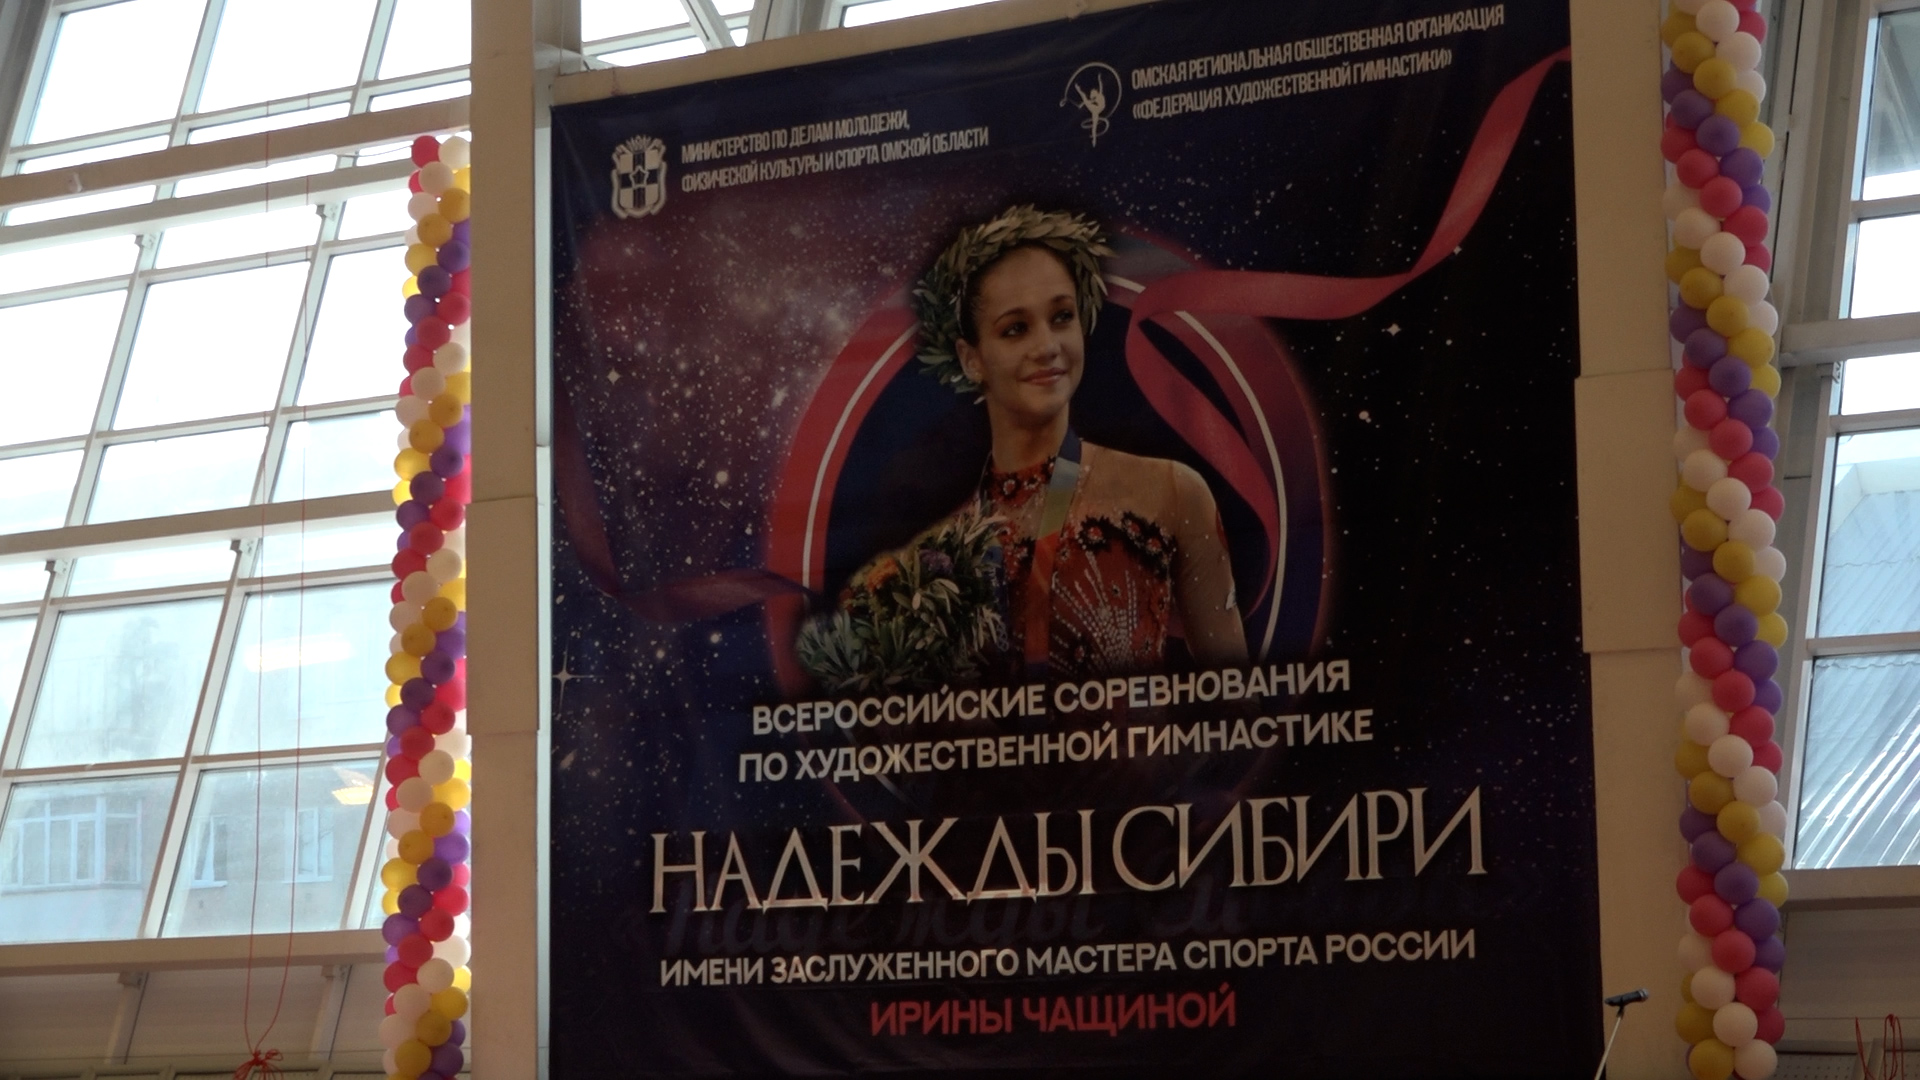 Соревнования по художественной гимнастике «Надежды Сибири» имени Ирины Чащиной